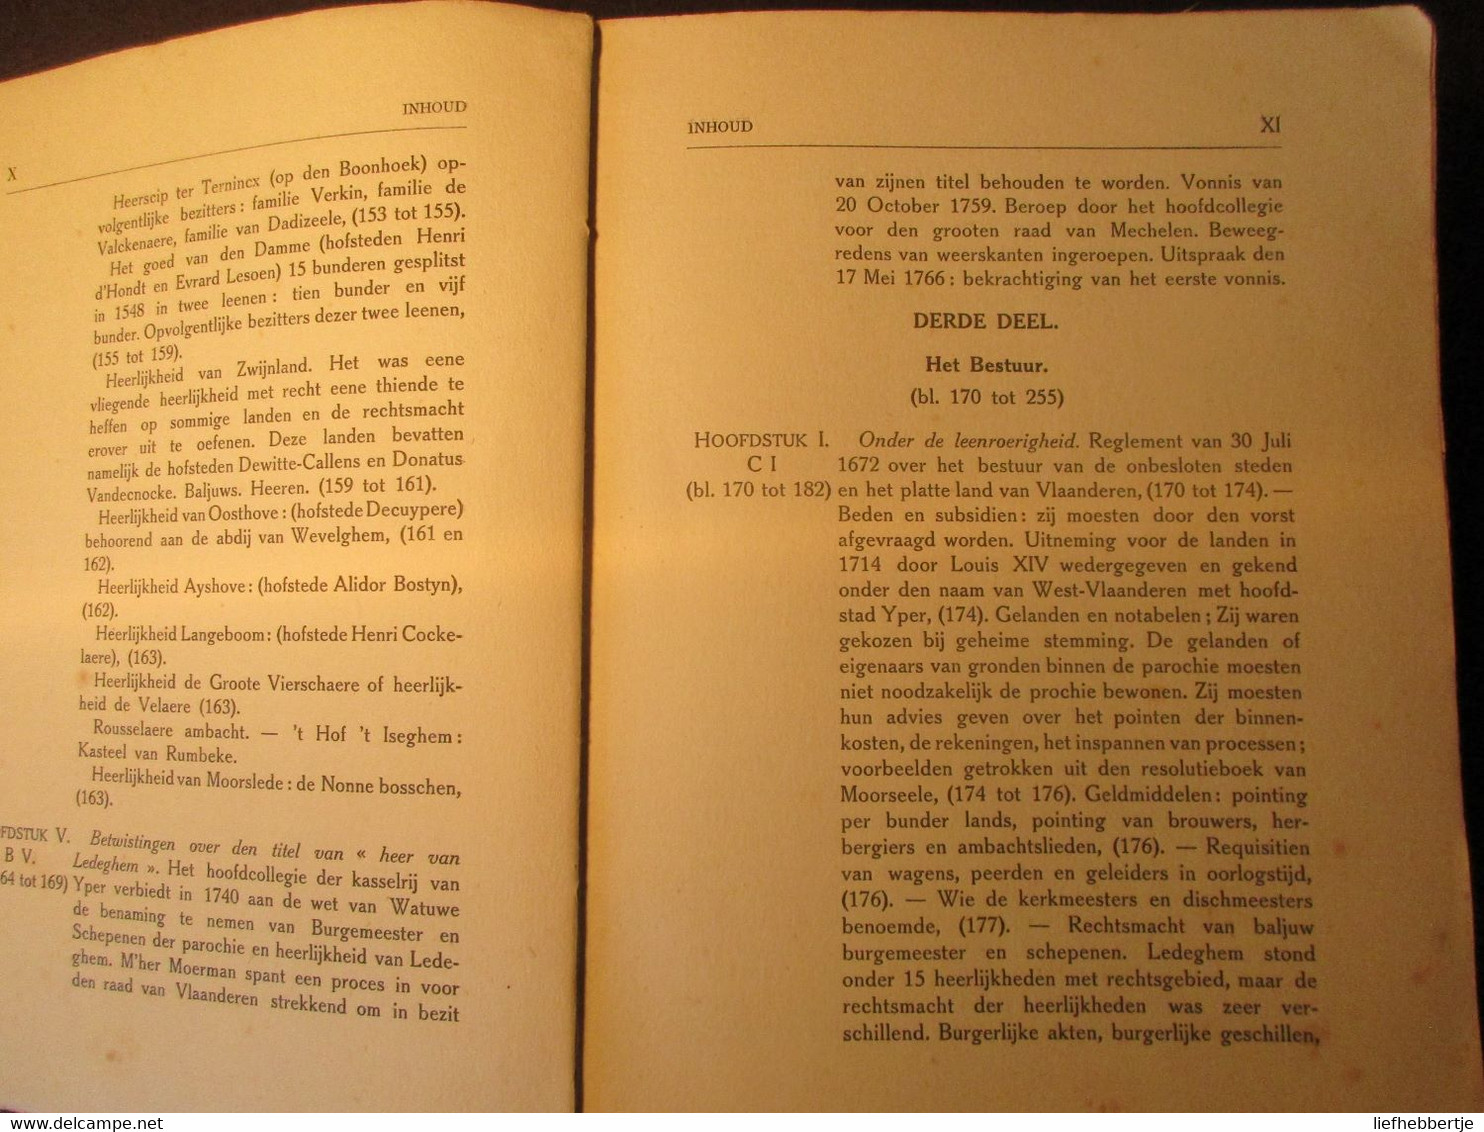 (Ledegem) Geschiedenis van Ledeghem - door Mussely en Buysschaert - originele uitgave van 1912